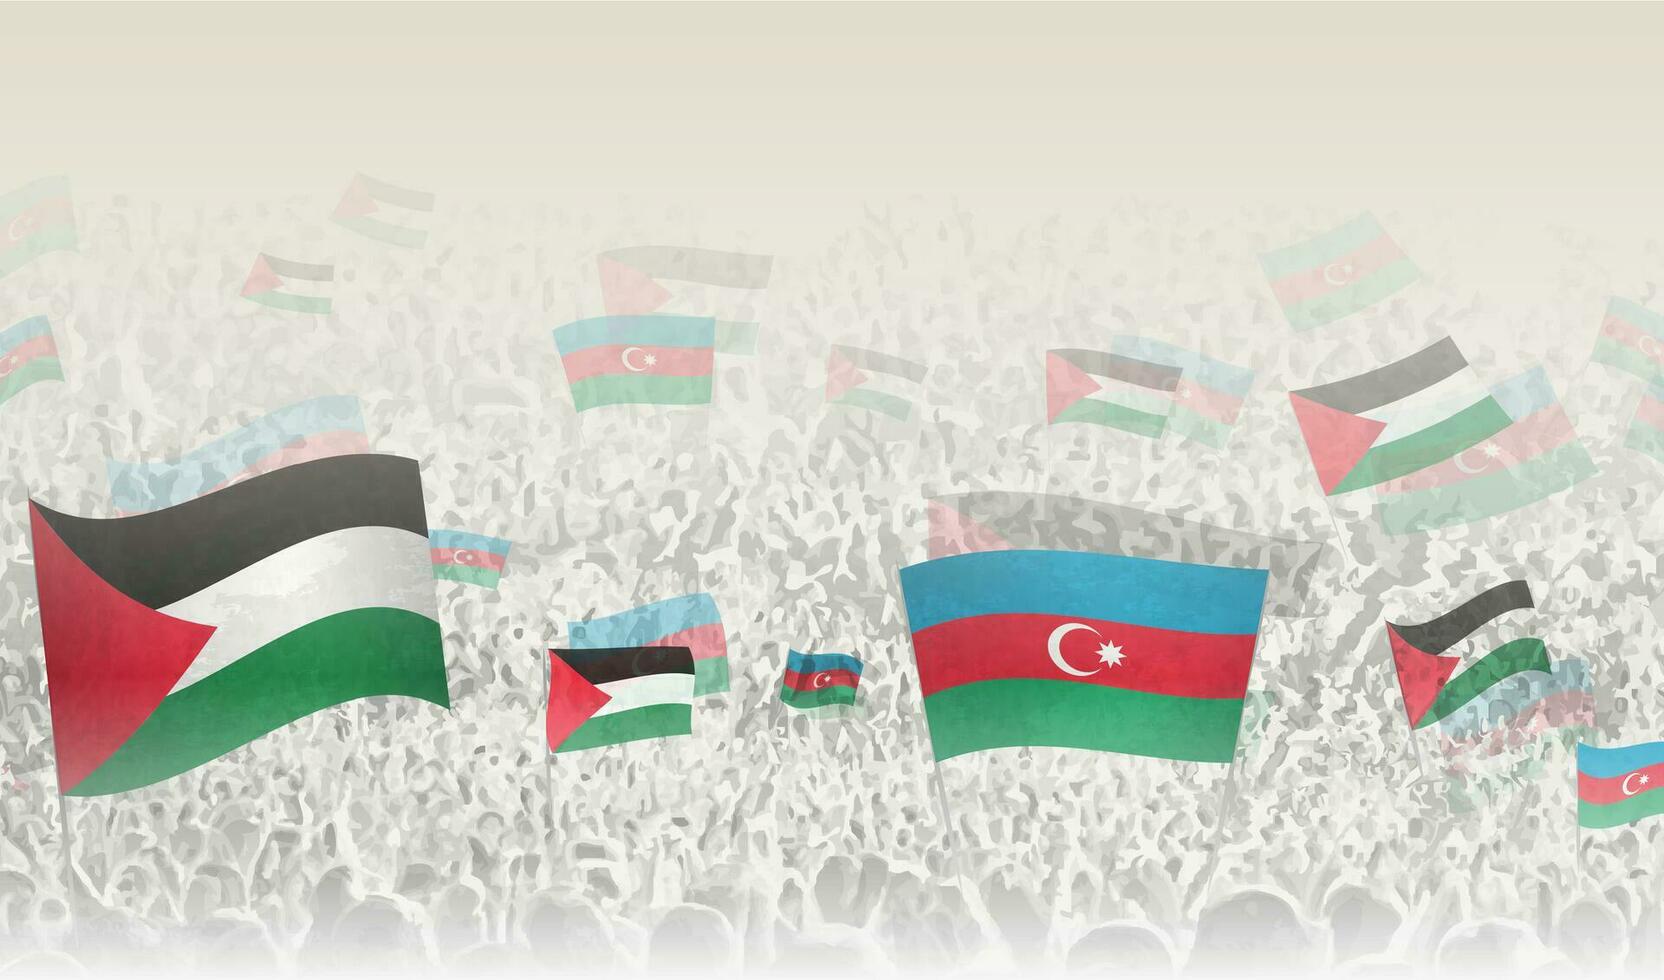 Palestina y azerbaiyán banderas en un multitud de aplausos gente. vector